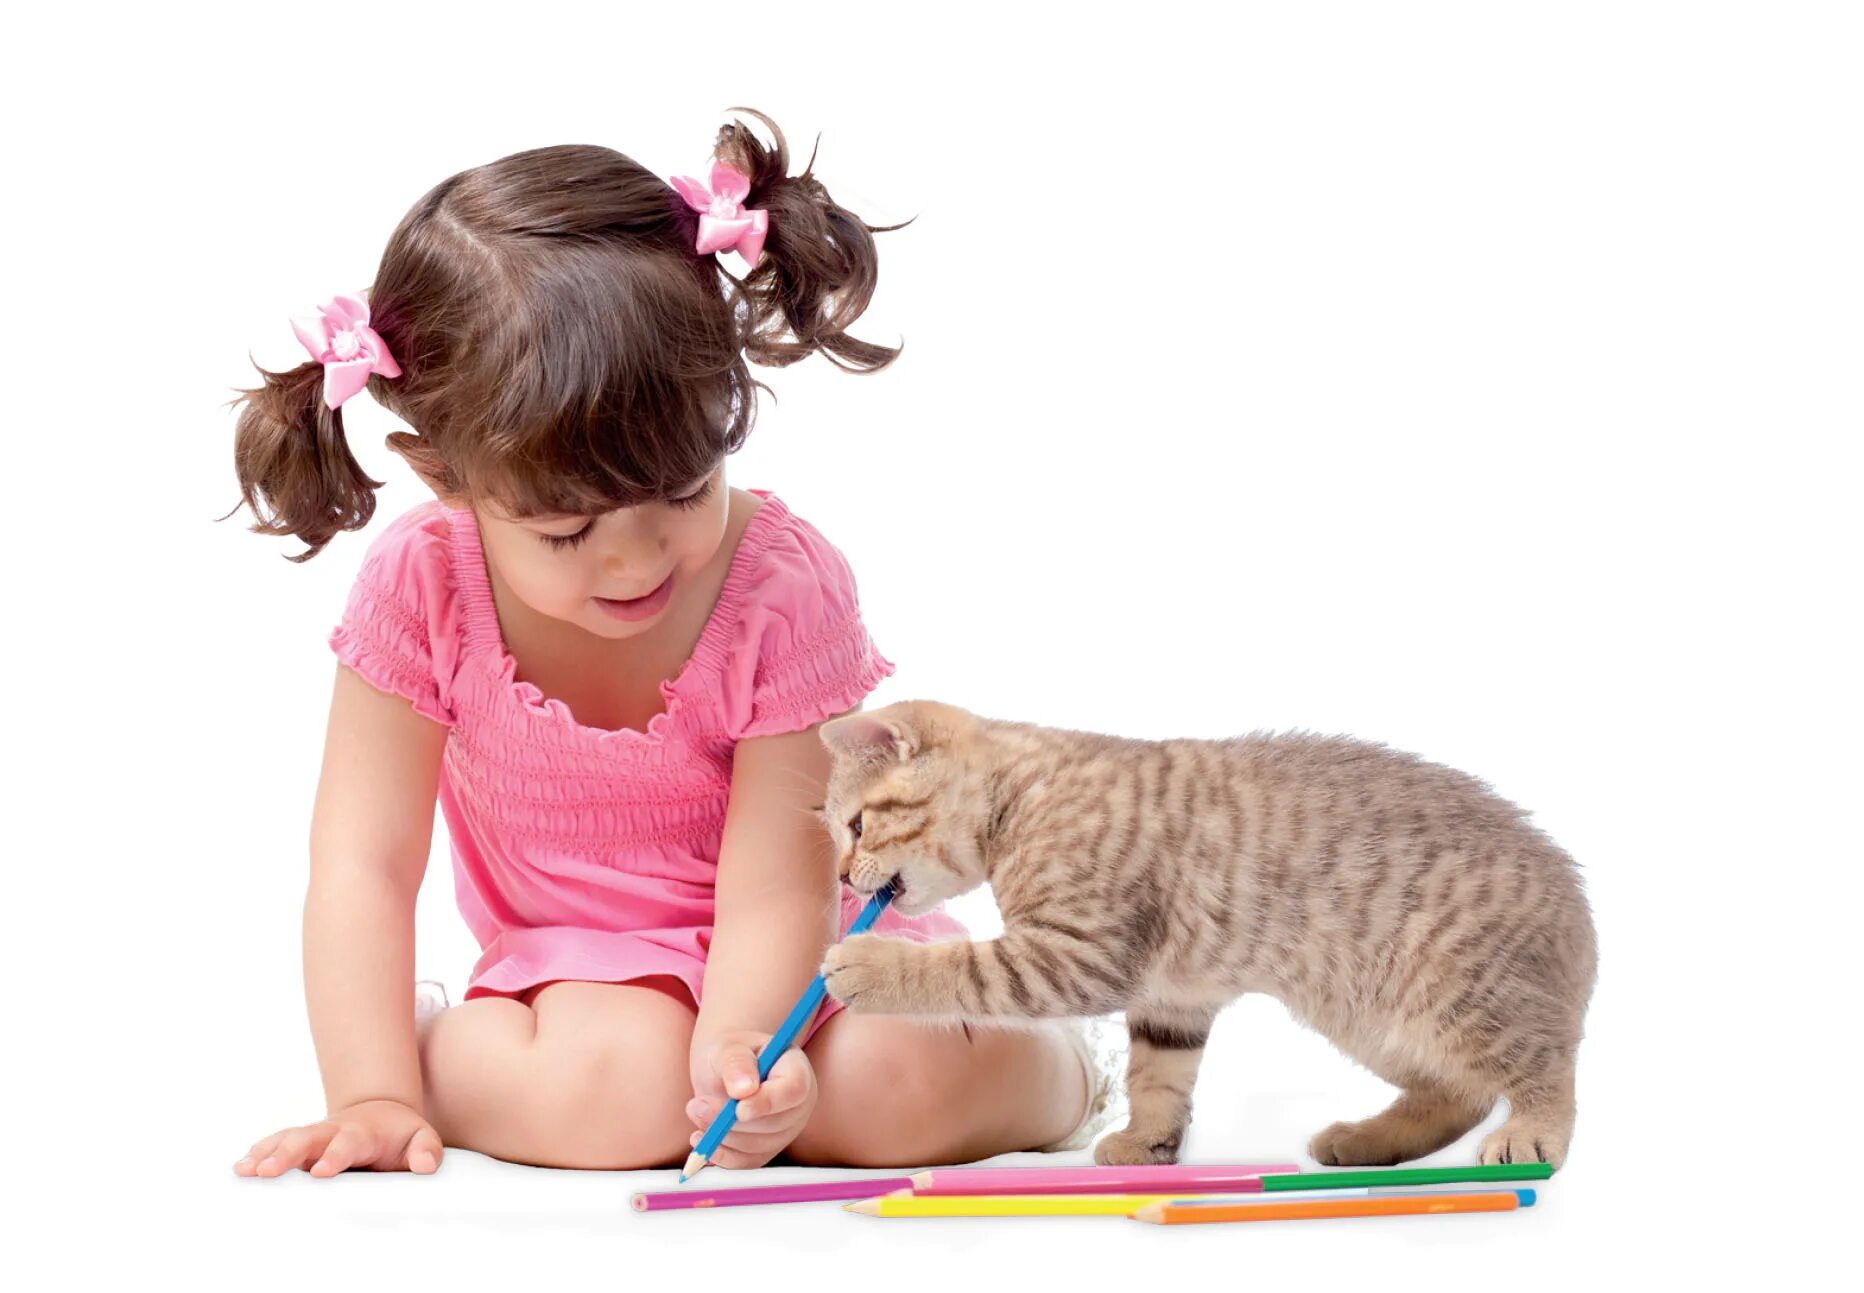 Котенок играет малыша. Девочка играет с котенком. Девушка с котенком играется. Ребенок играет с кошкой. Котенок играет.